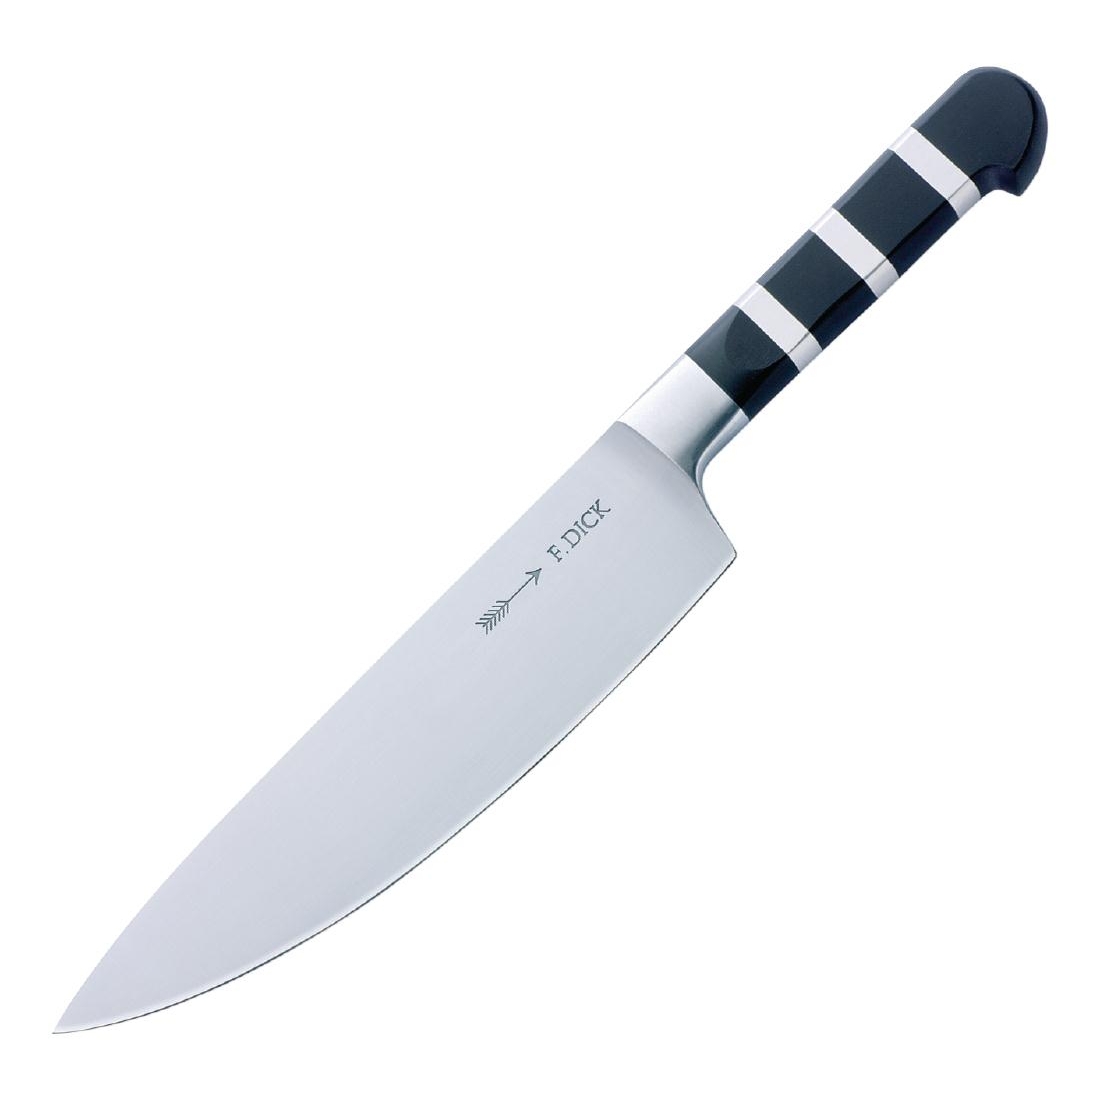 Dick 1905 Chefs Knife 21.5cm